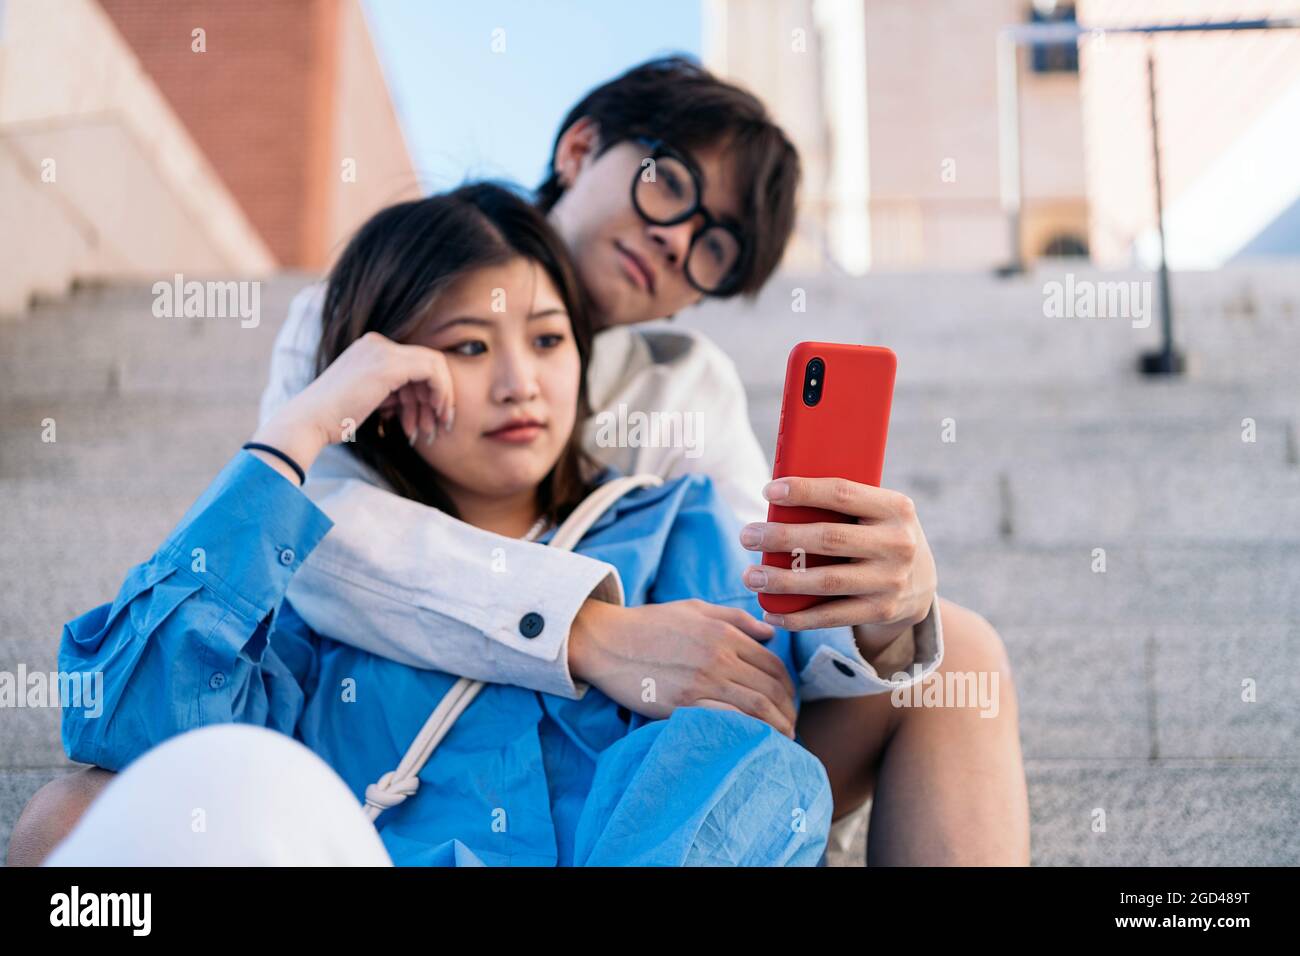 Glückliches asiatisches Paar, das zusammen auf der Straße sitzt und auf ihr Smartphone schaut. Stockfoto